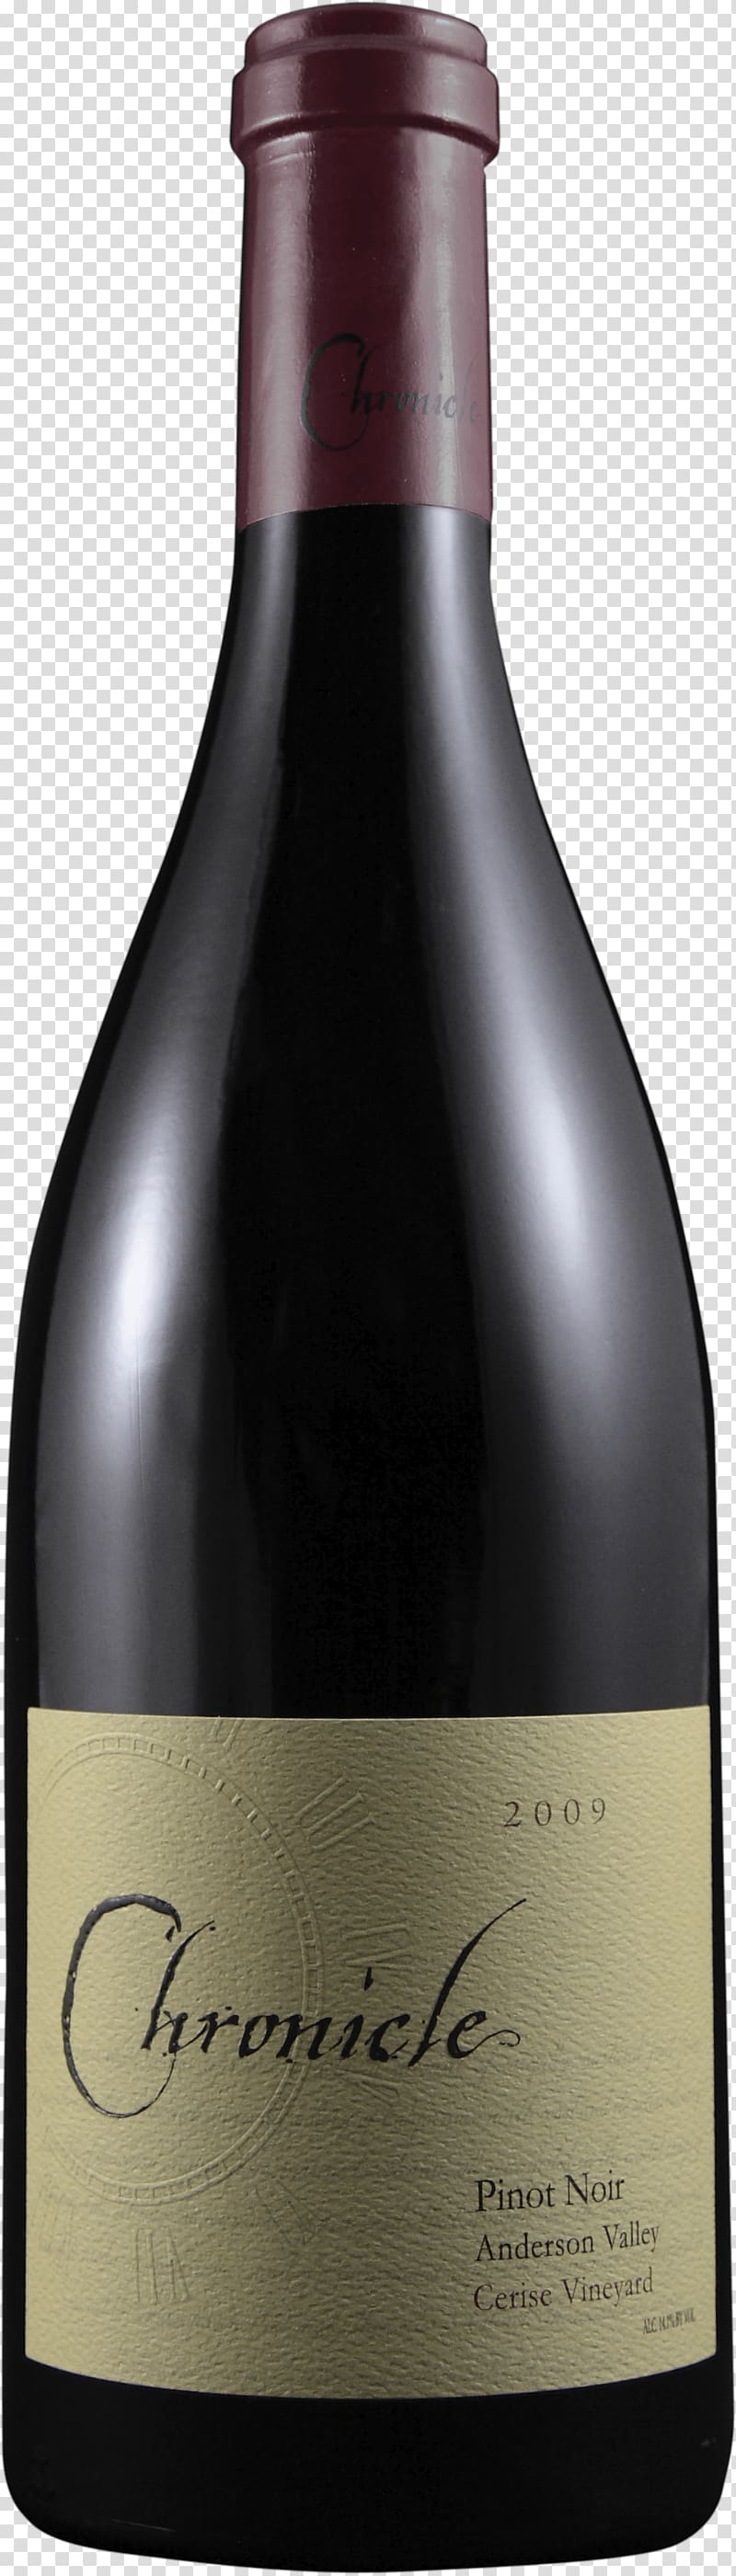 Red Wine Bottle, Bottle Of Bottle transparent background PNG clipart